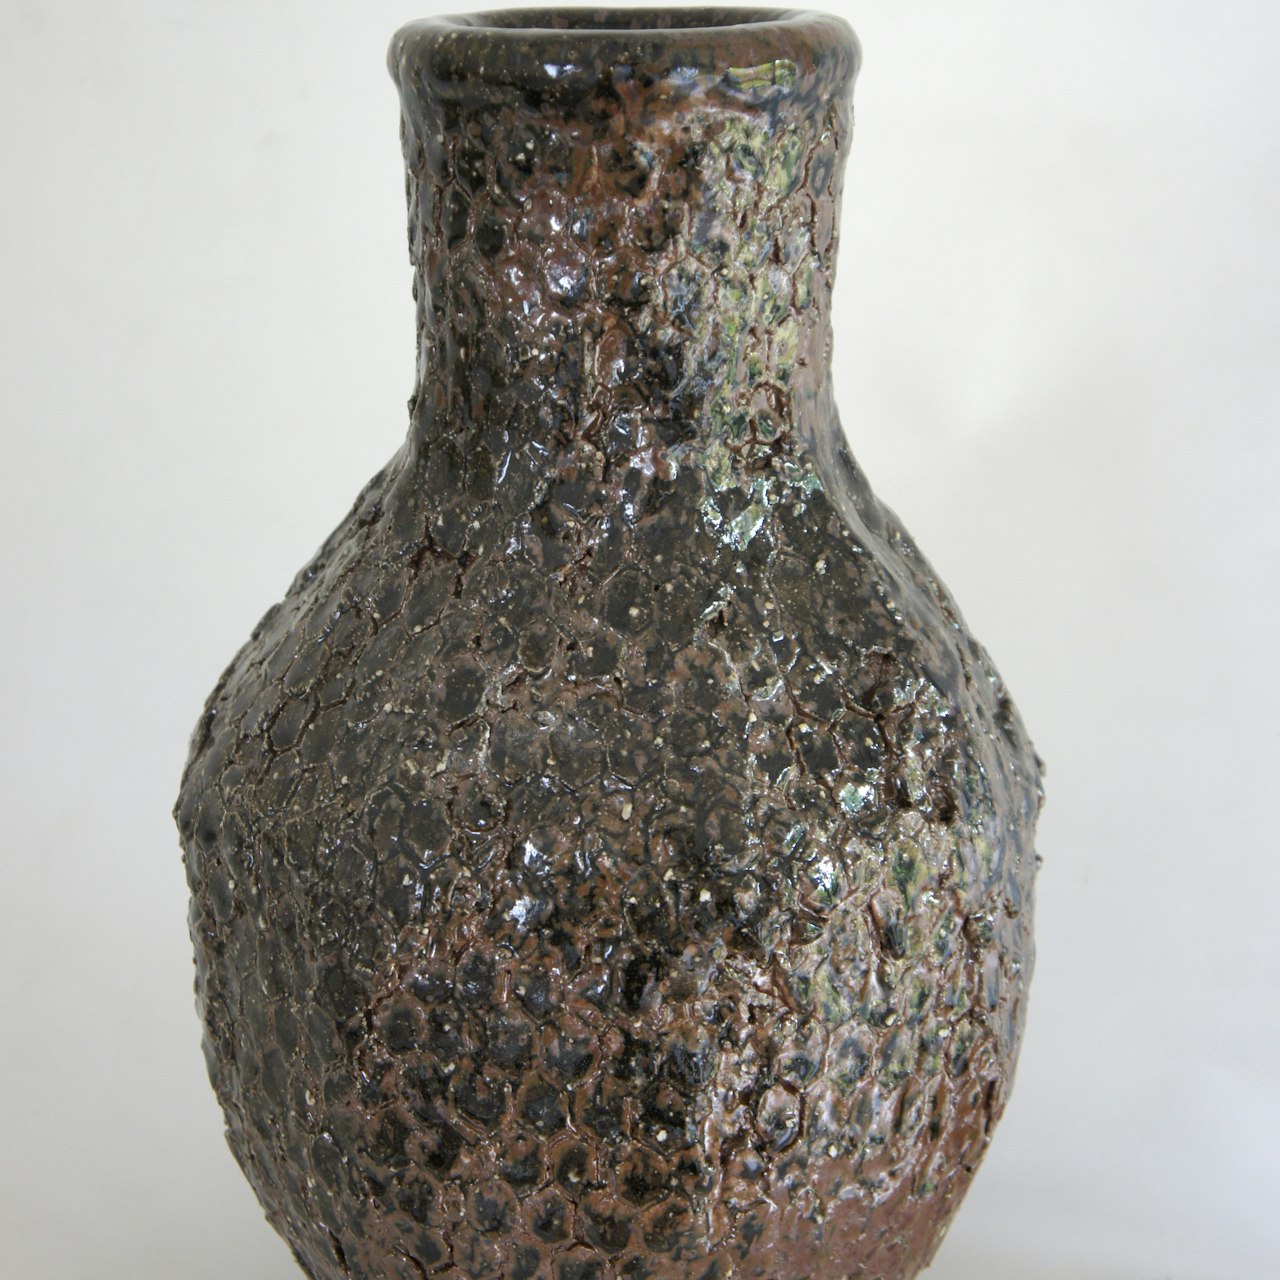 Honeycomb vase